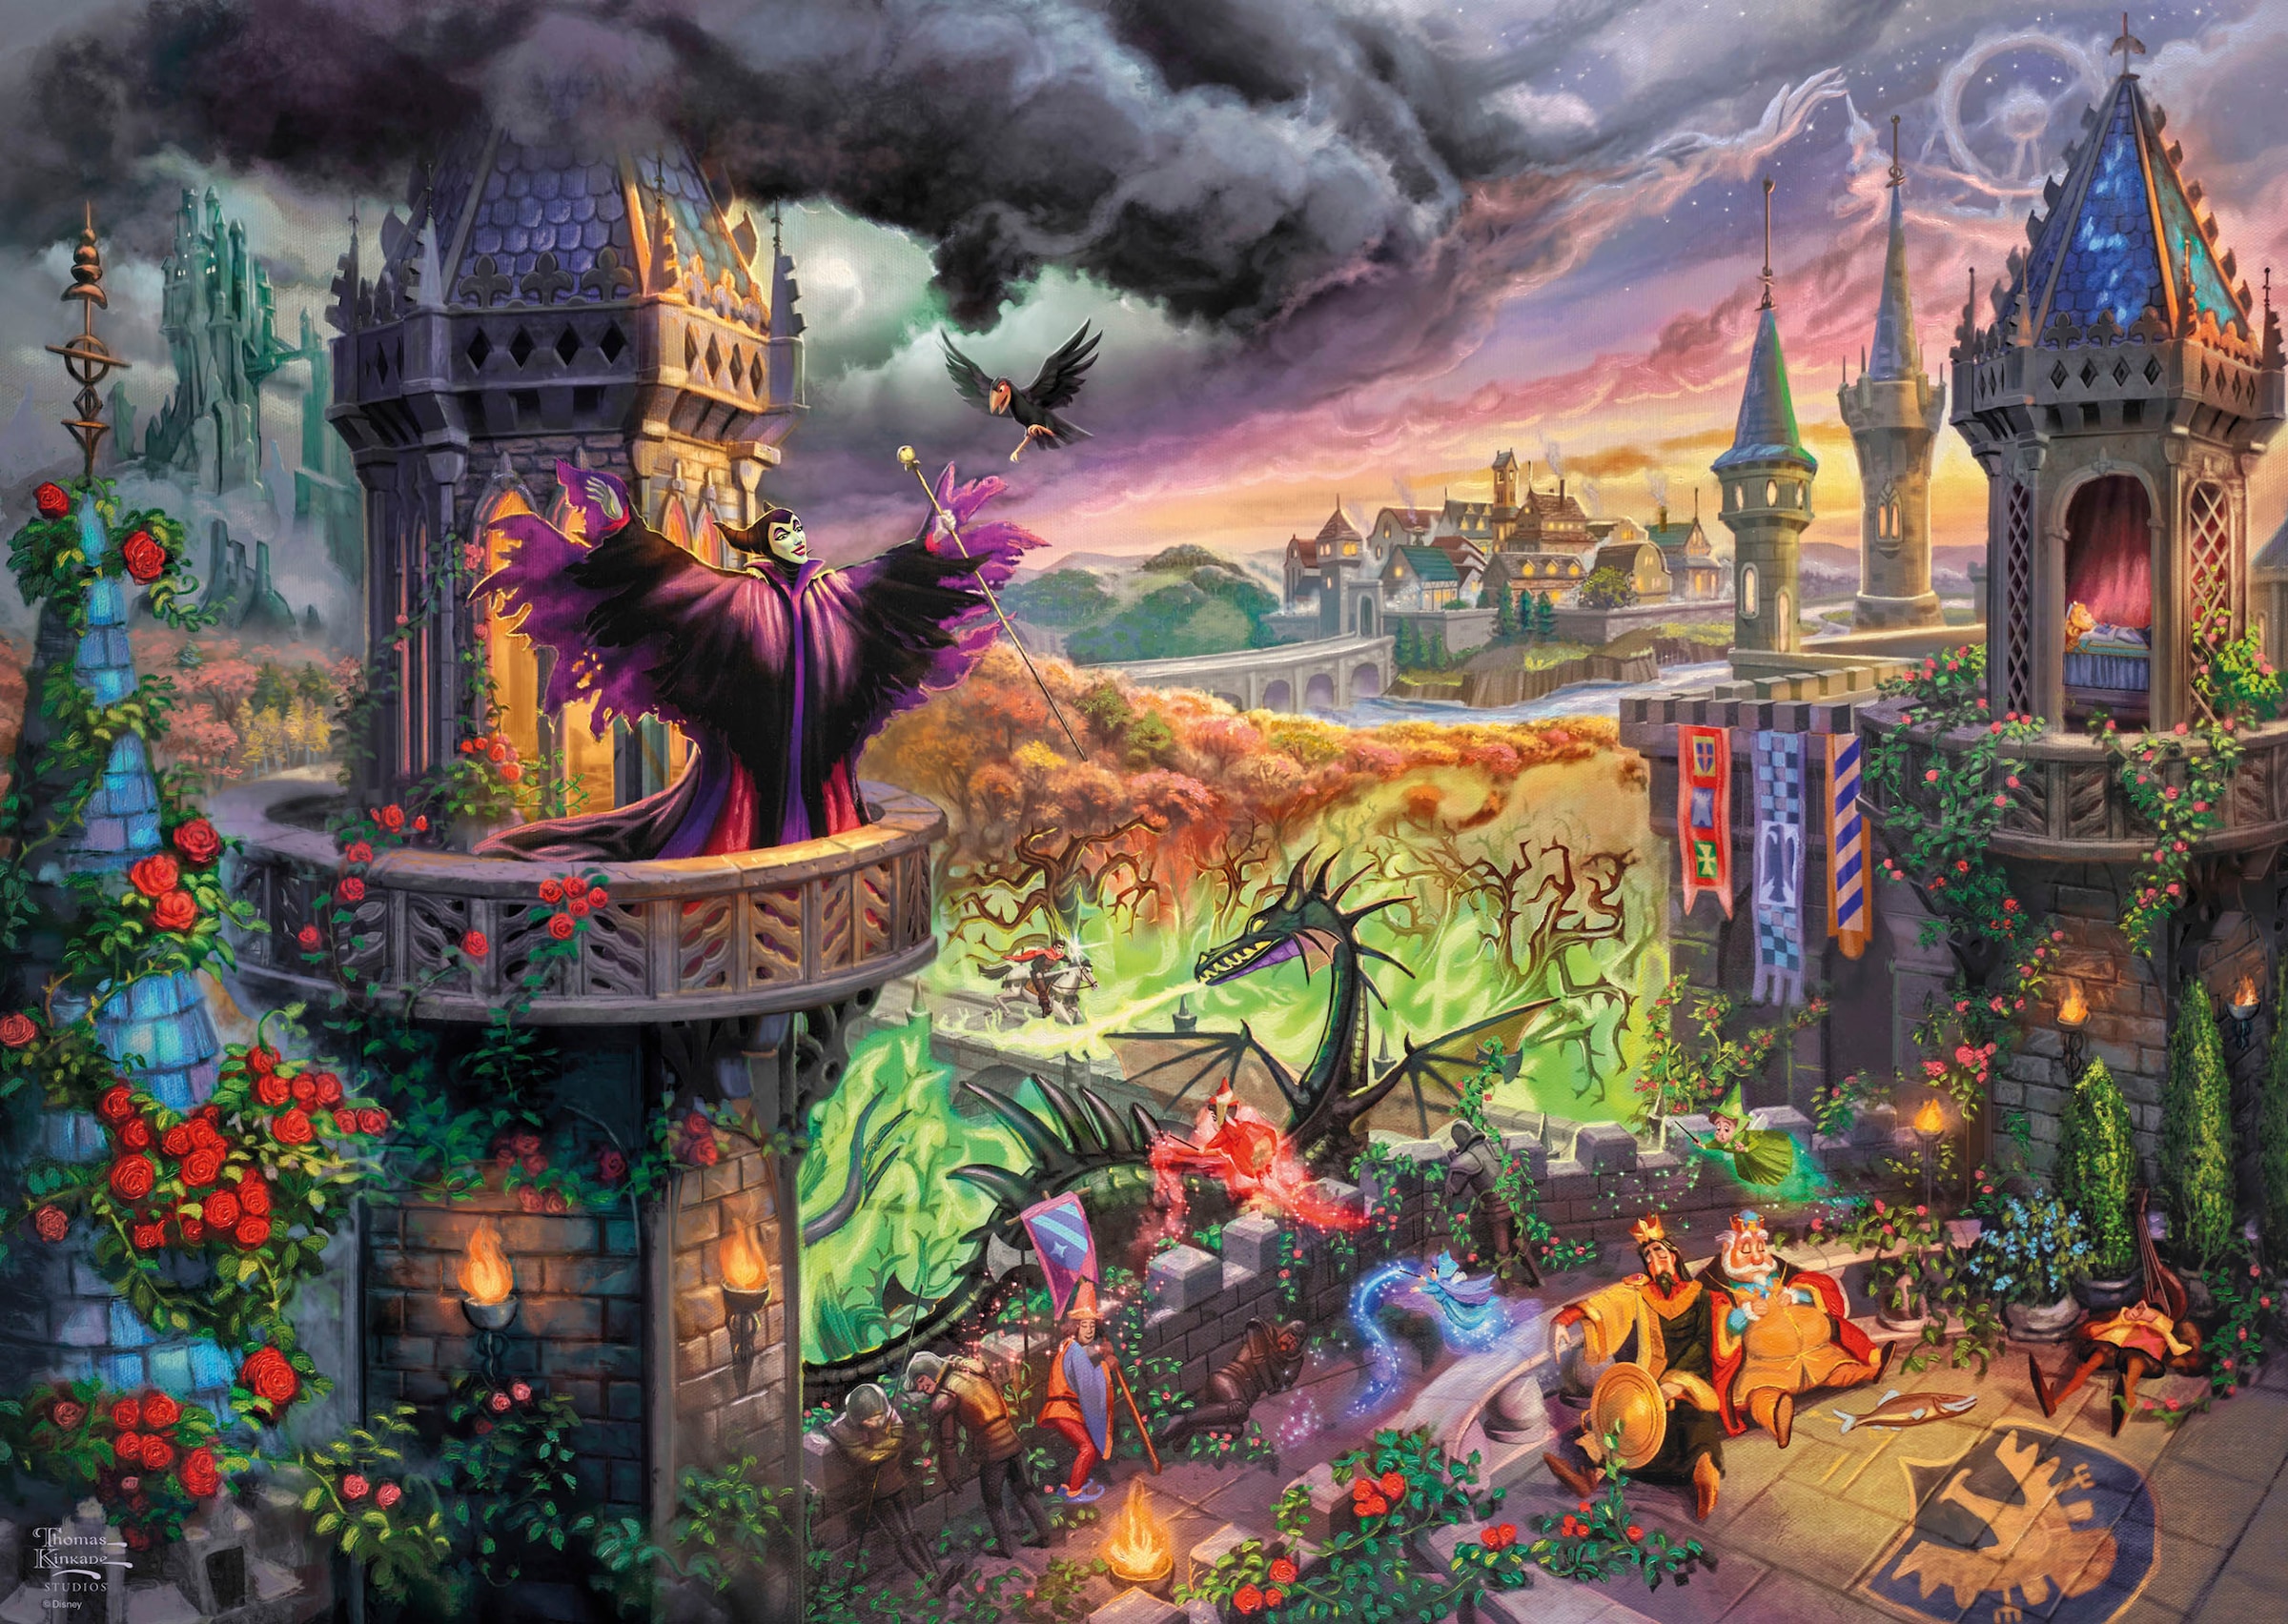 Schmidt Spiele Puzzle »Disney Maleficent von Thomas Kinkade«, Made in Europe